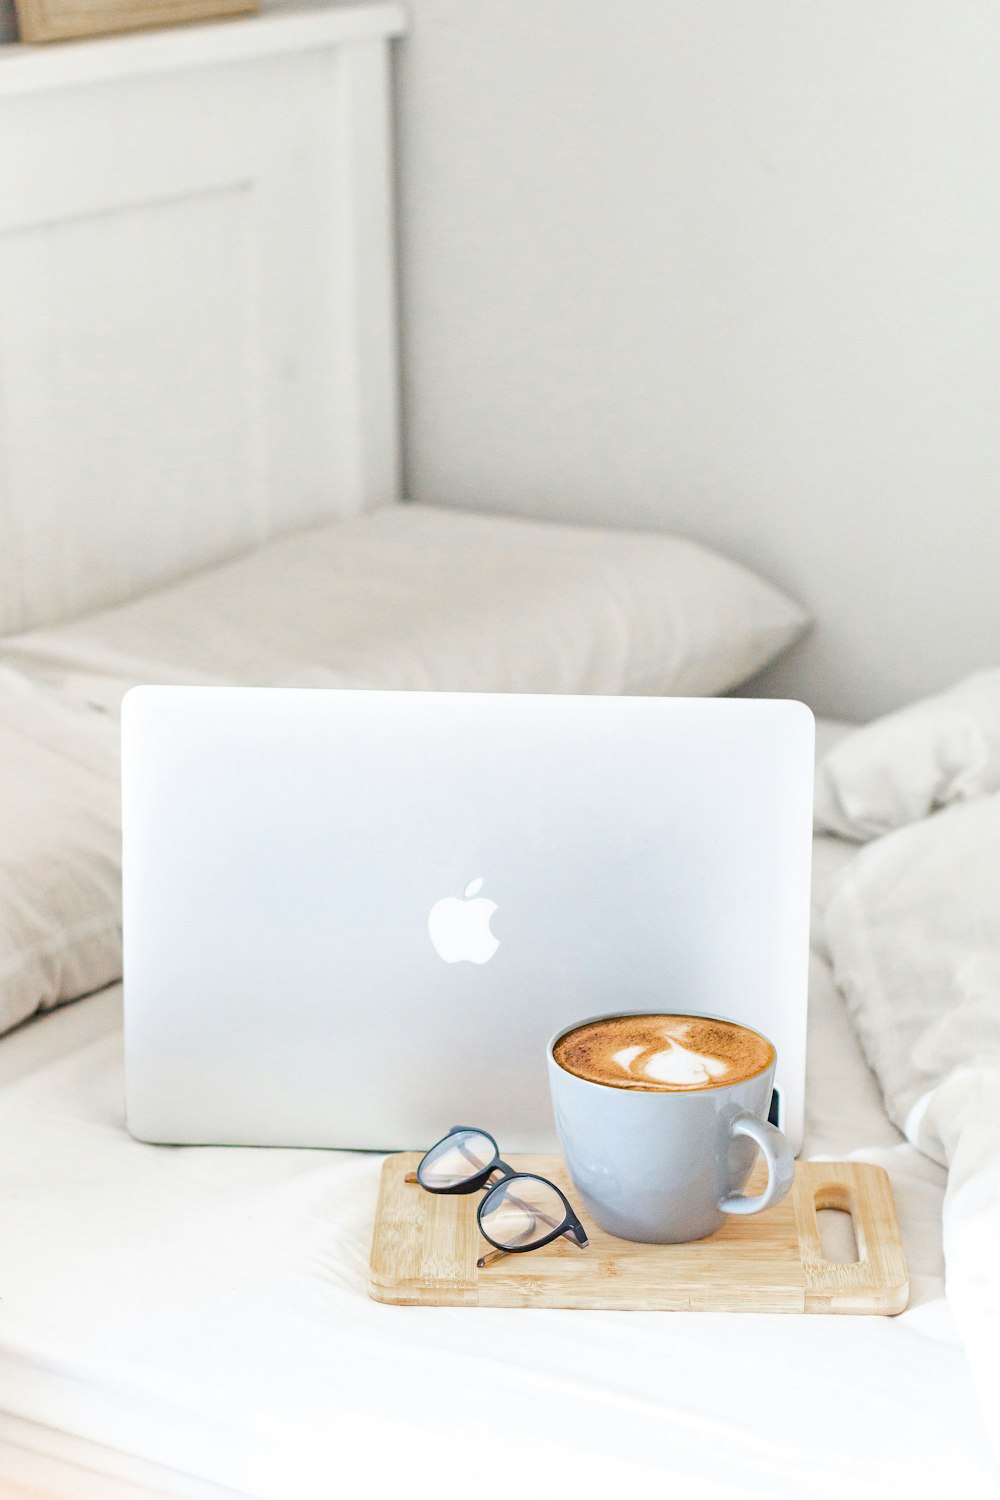 MacBook Air à côté d’une tasse en céramique blanche sur un lit blanc